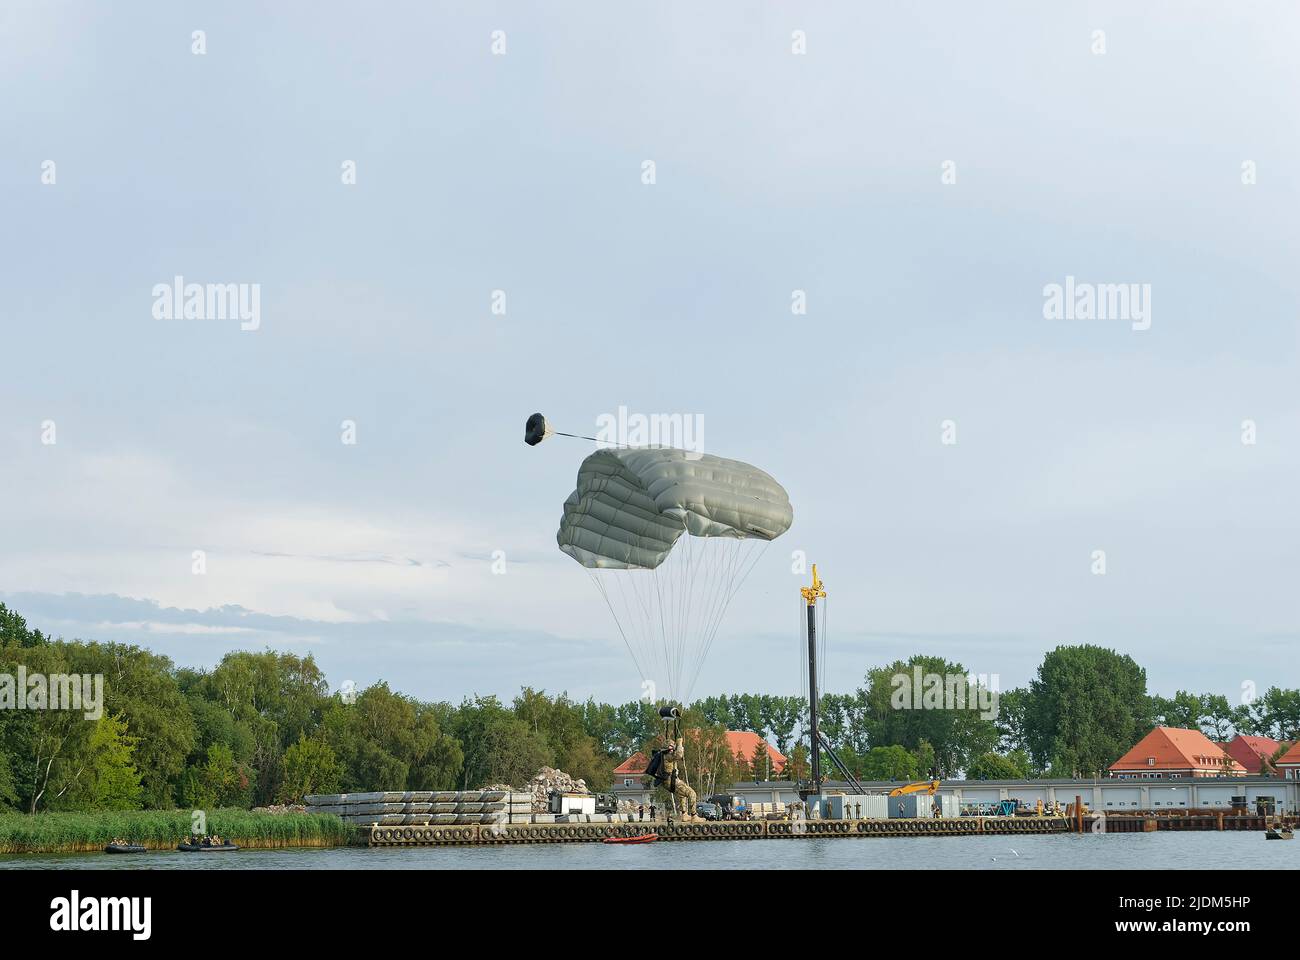 Un soldato paracadutato scende sull'acqua. Foto scattata durante lo spettacolo di paracadute jumping durante il Commando Fest di Dziwnów - Agosto 2020. Foto Stock